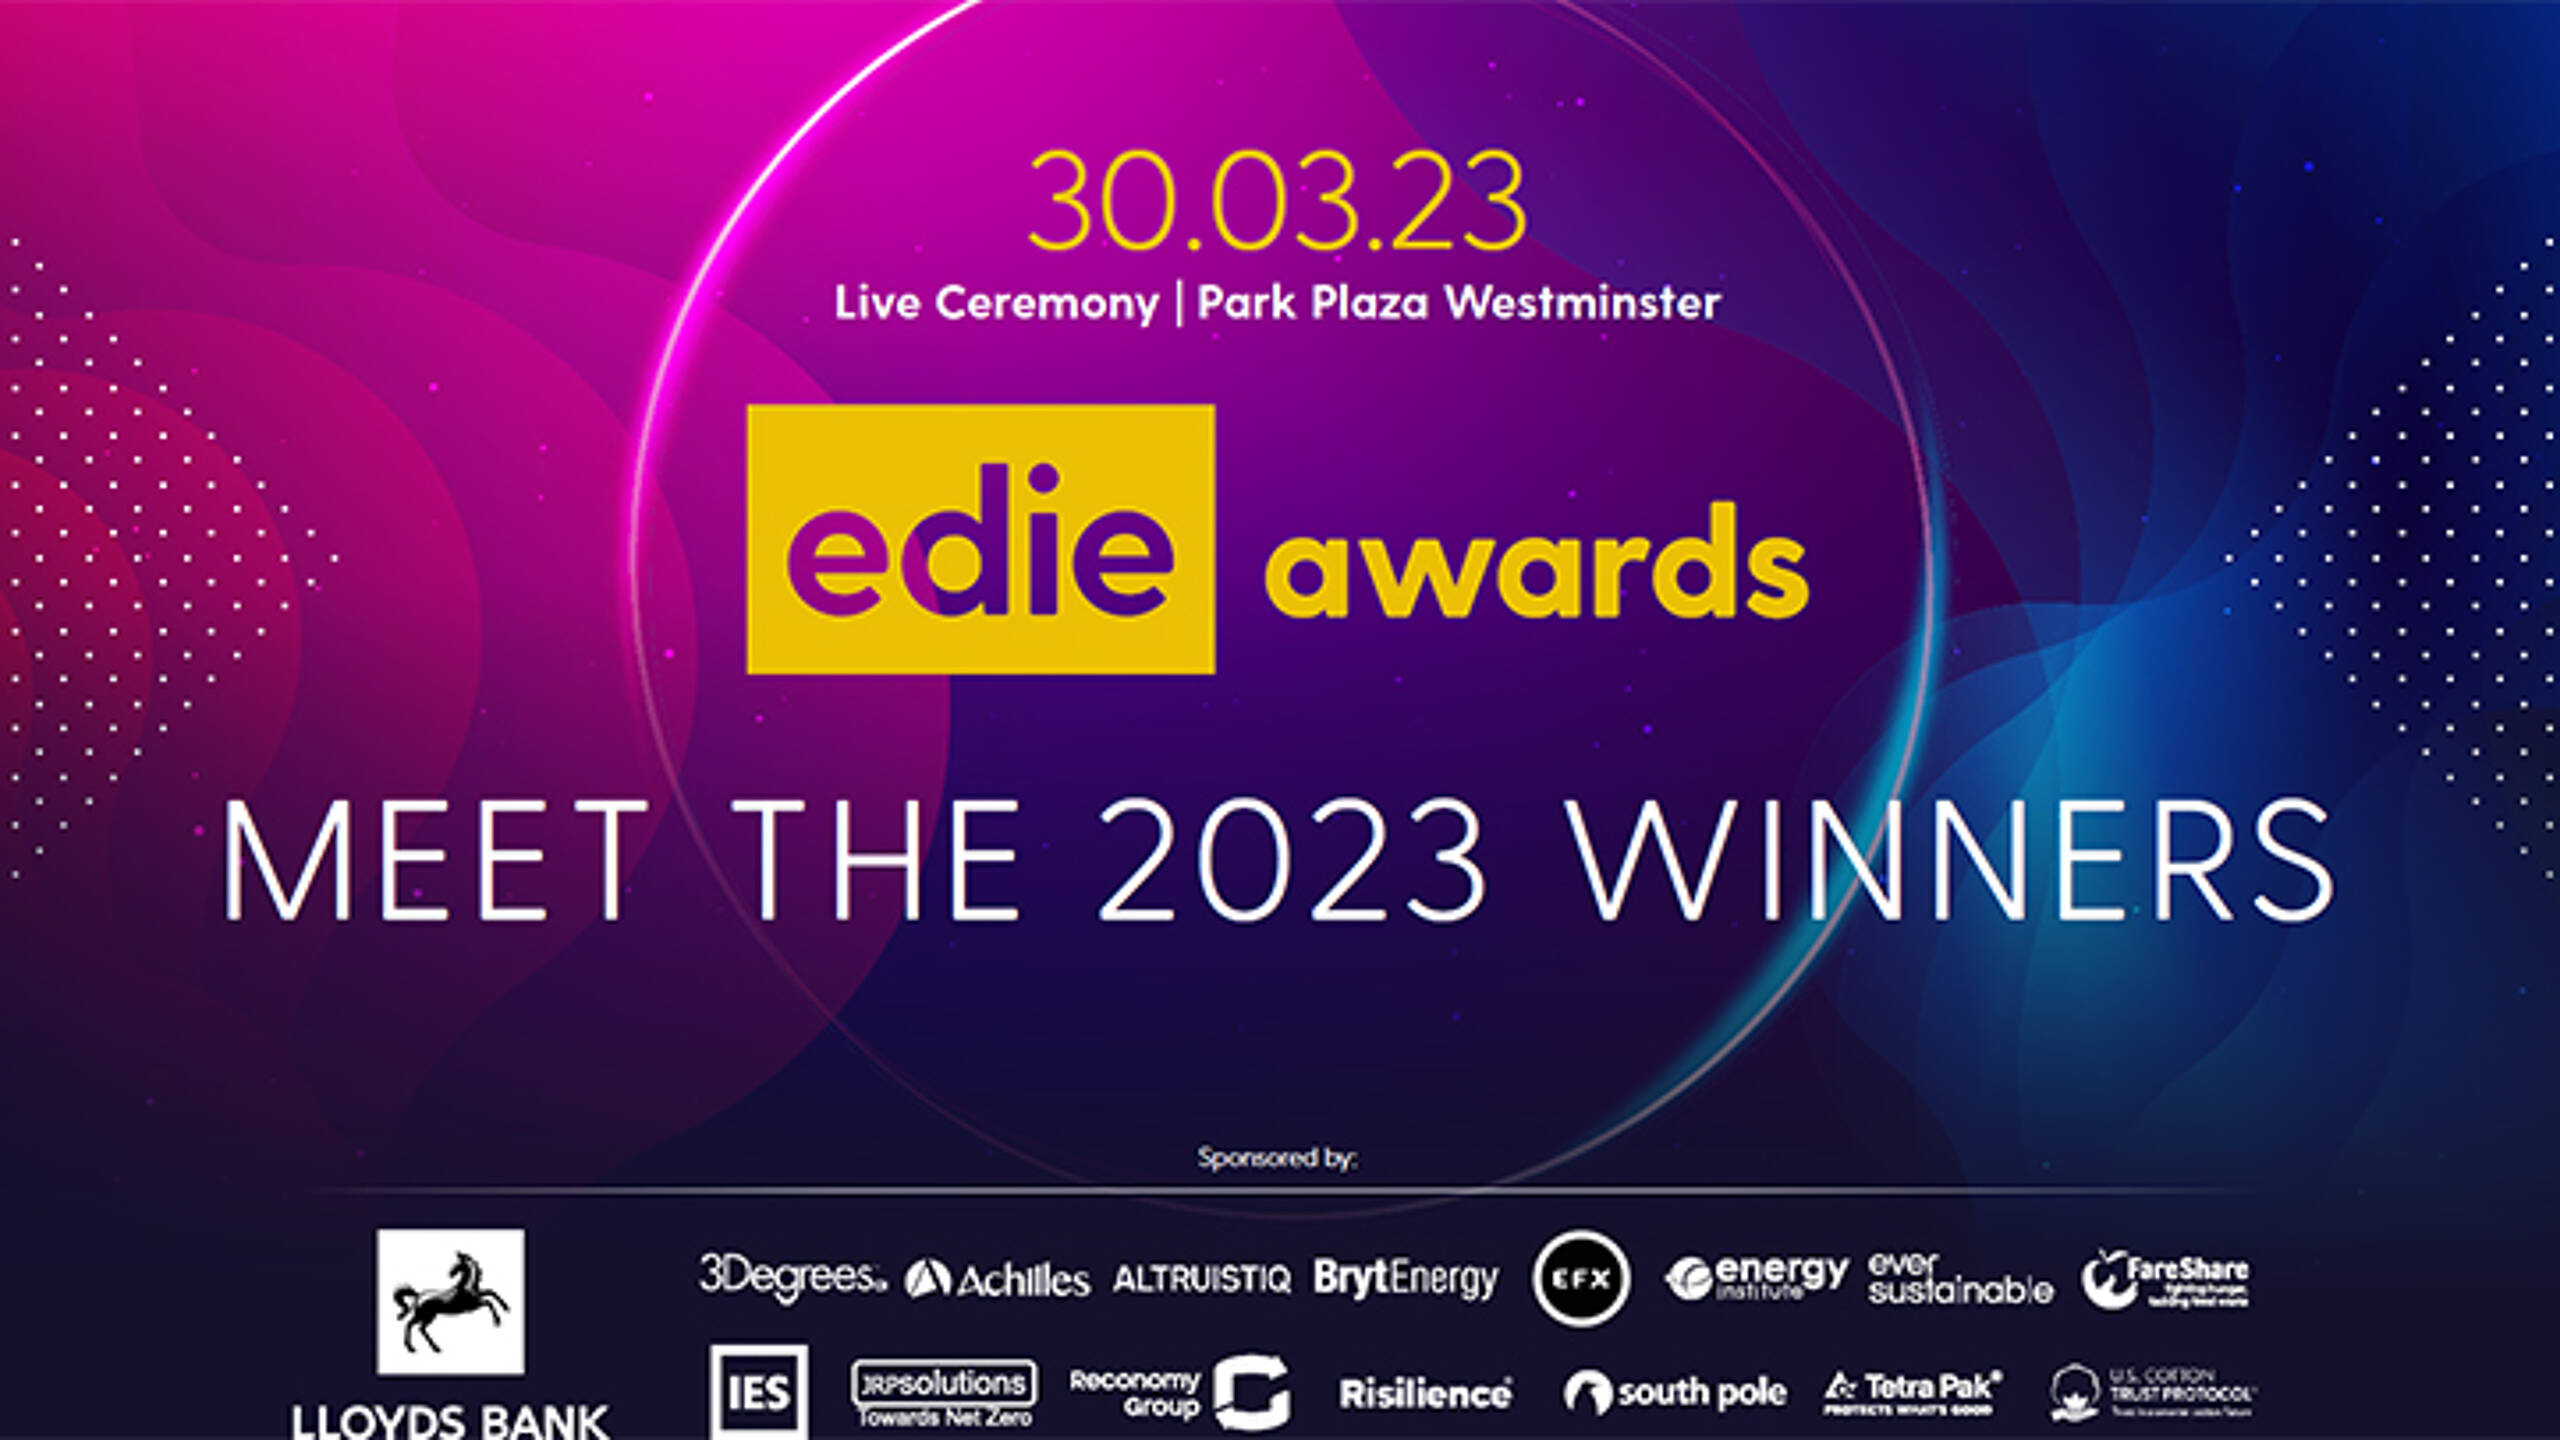 edie Awards 2023: Meet the Winners